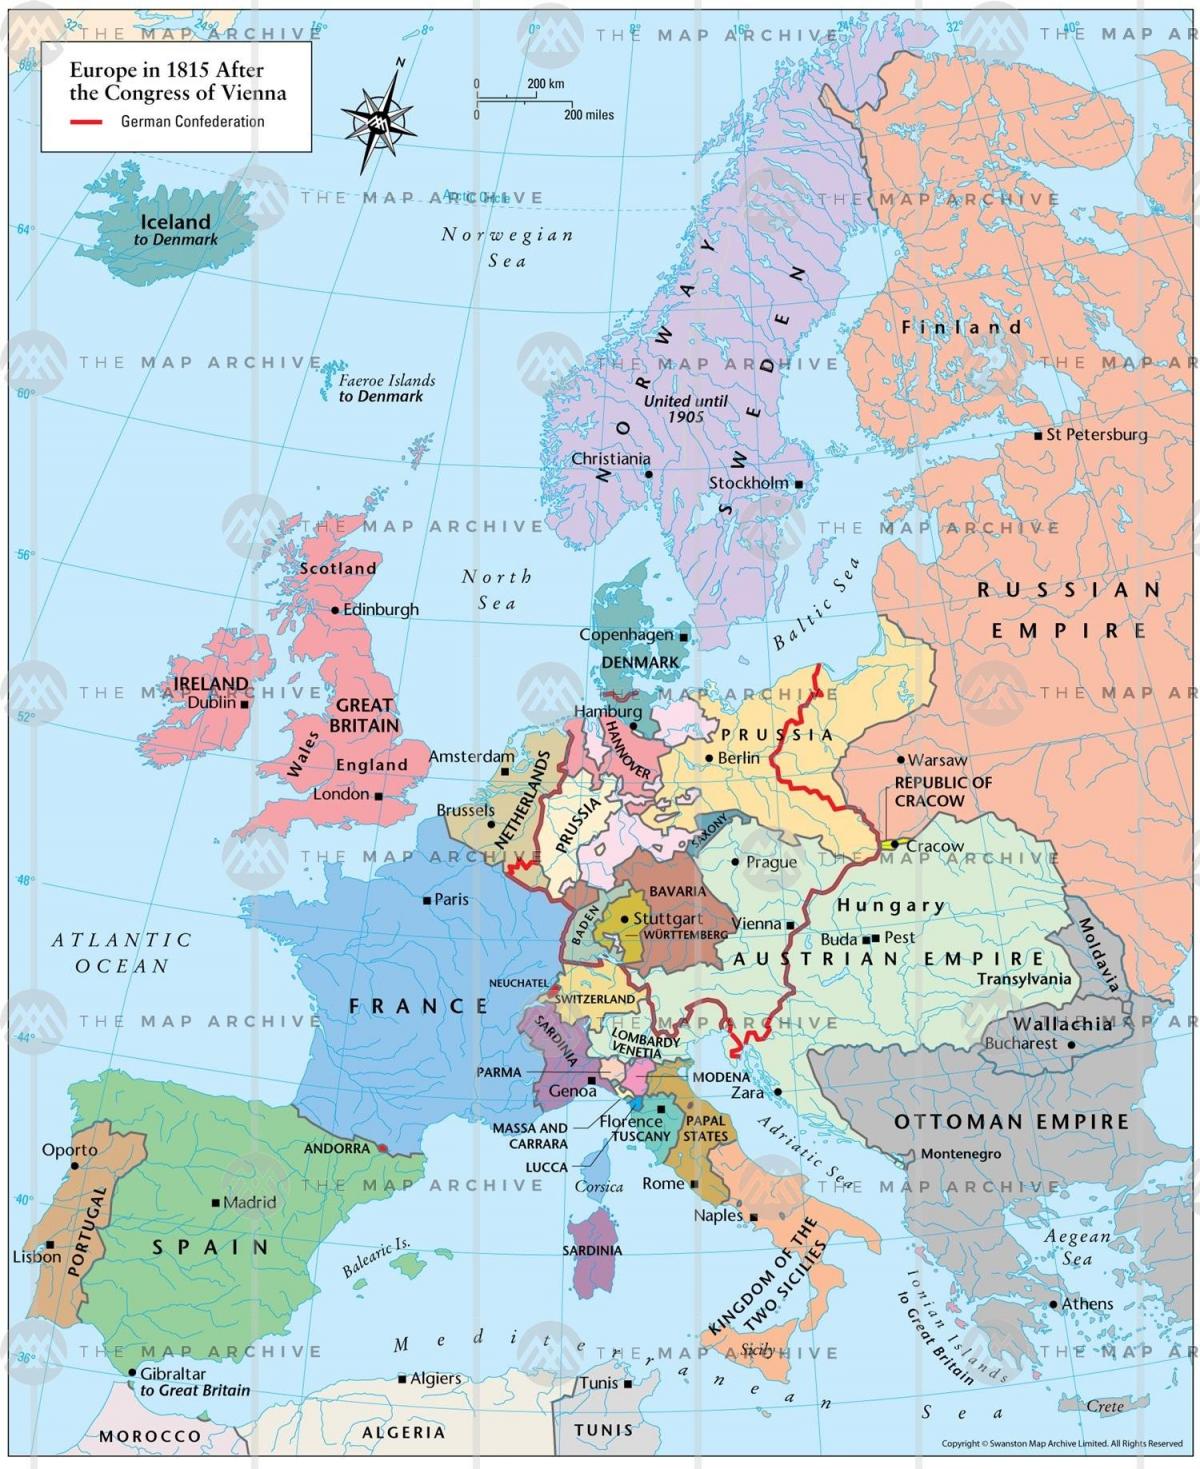 Dunaj Avstrija zemljevid evrope